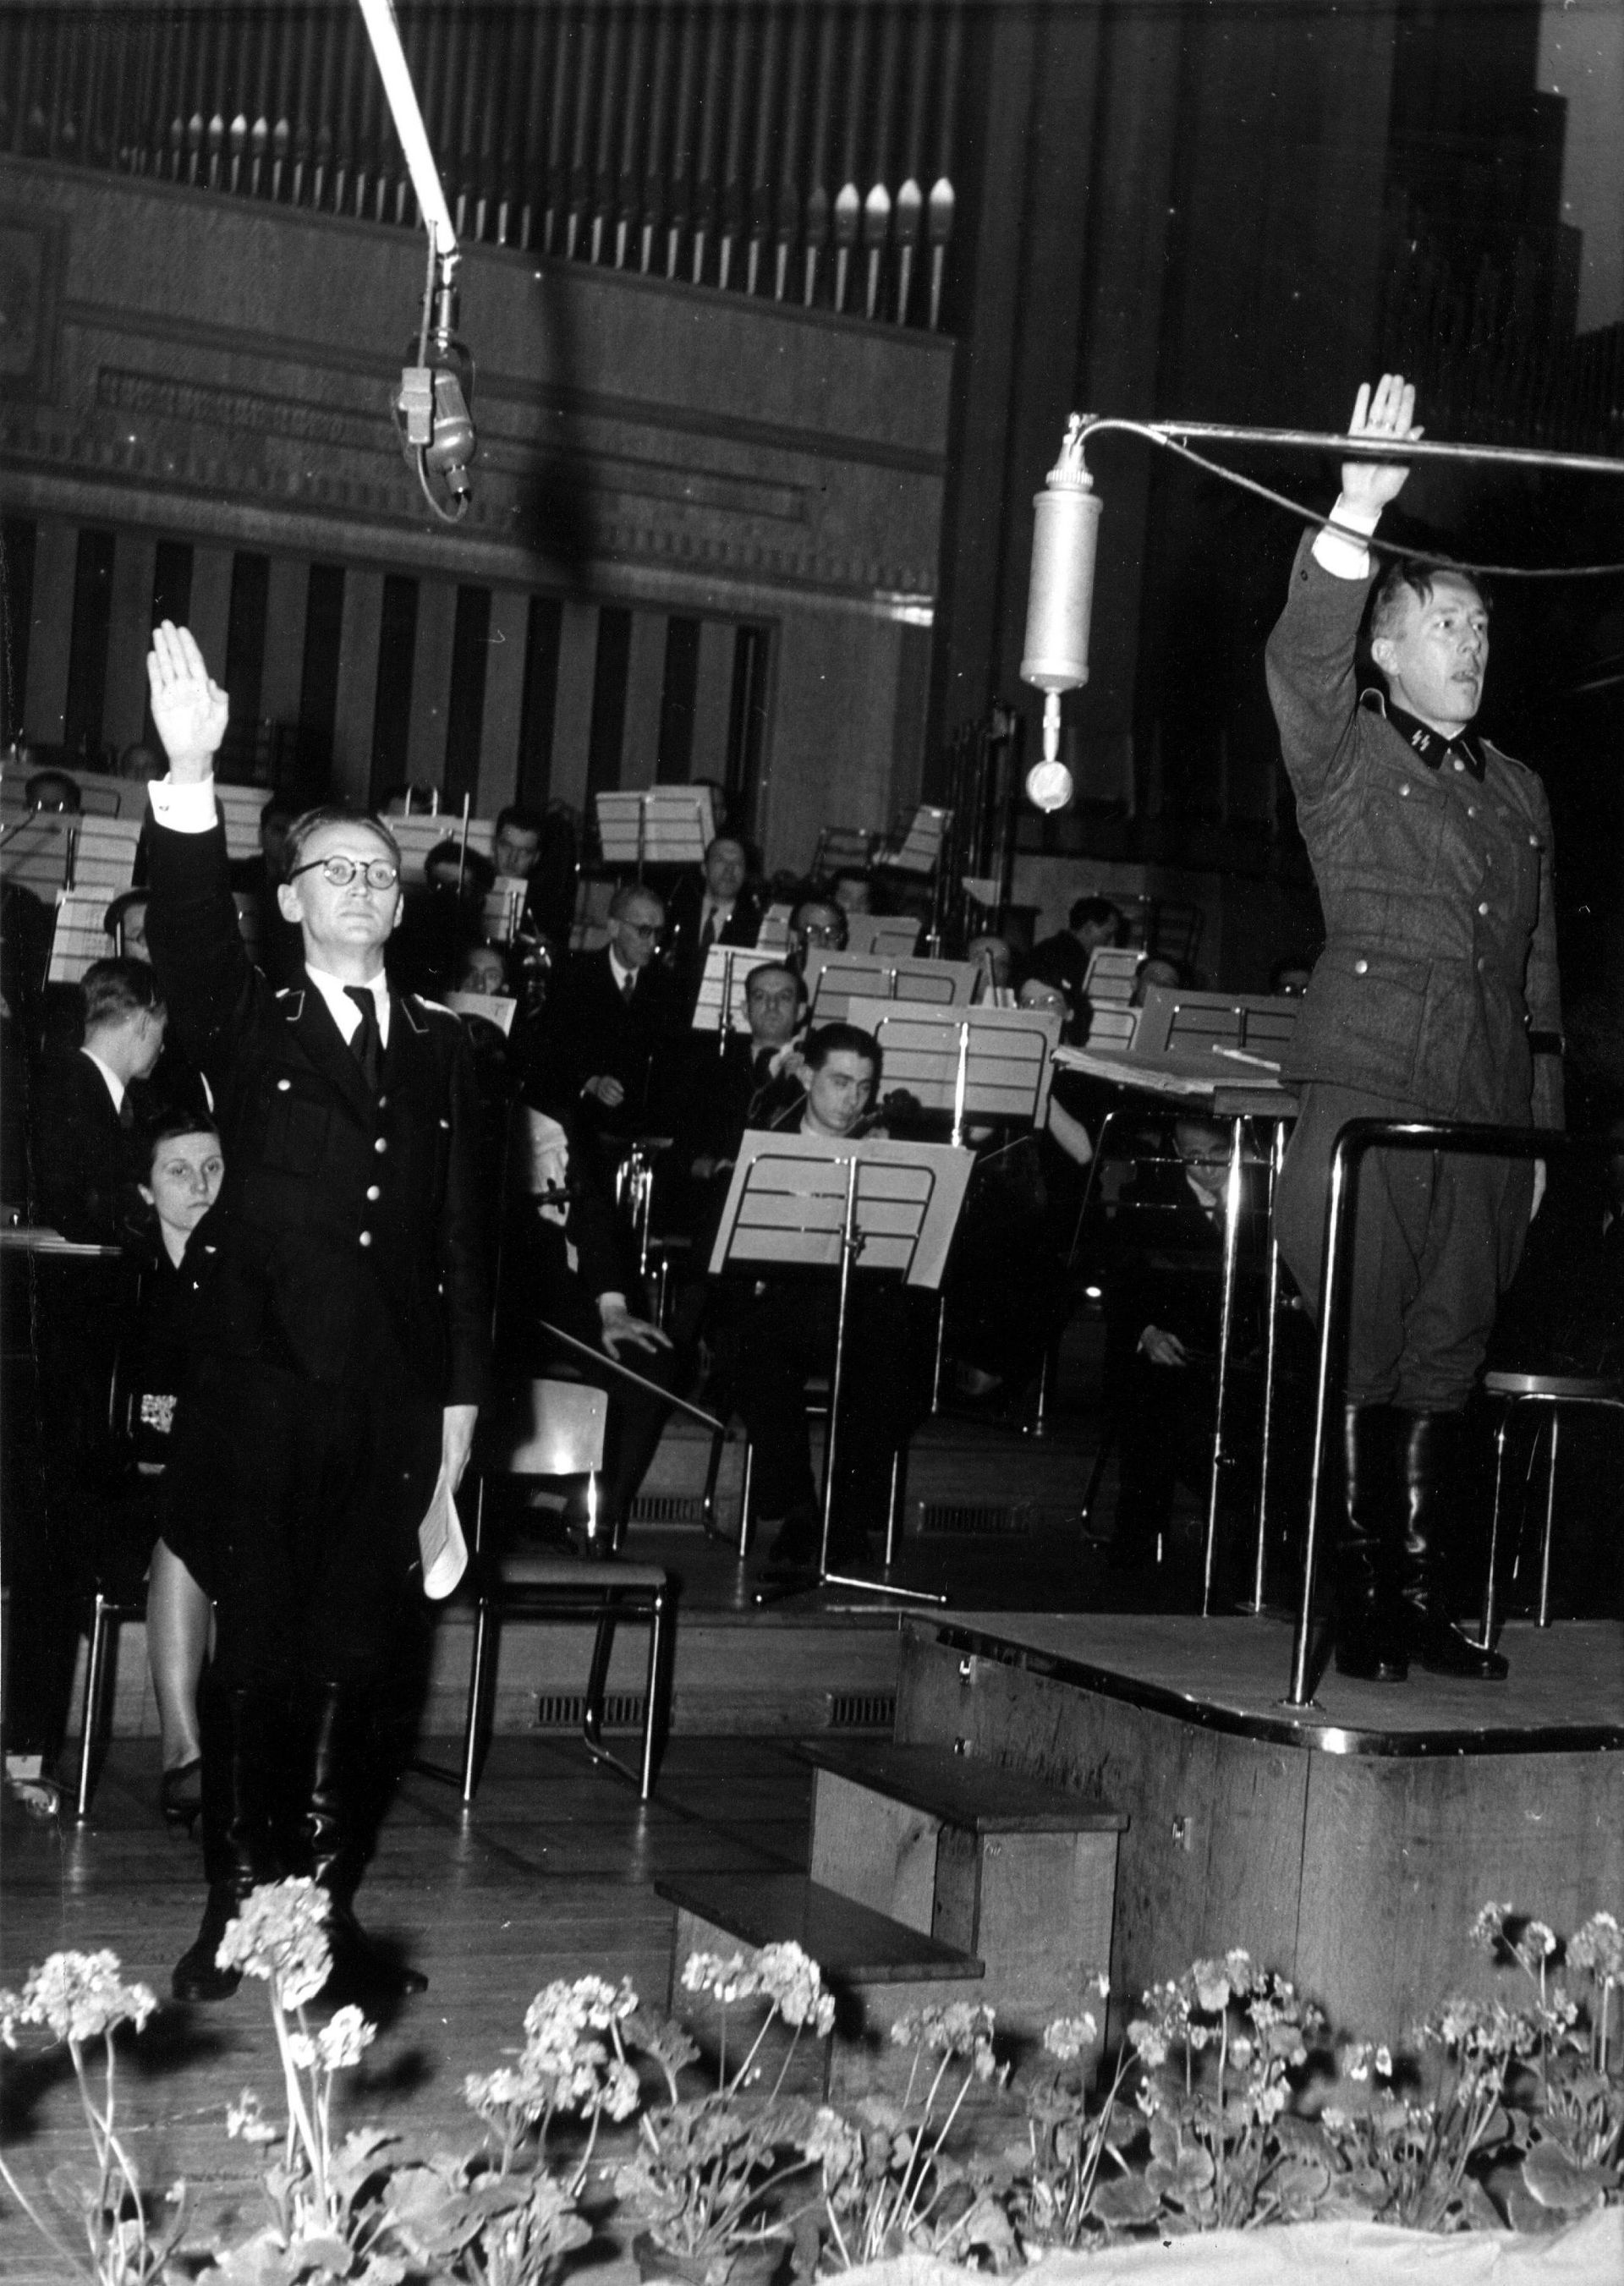 Photo n°1 - Place Flagey, concert à Radio Bruxelles – Zender Brussel, les radios contrôlées par les Nazis en Belgique pendant la Seconde Guerre mondiale. À droite, le chef de l’orchestre Paul Douliez en uniforme de la Waffen SS.